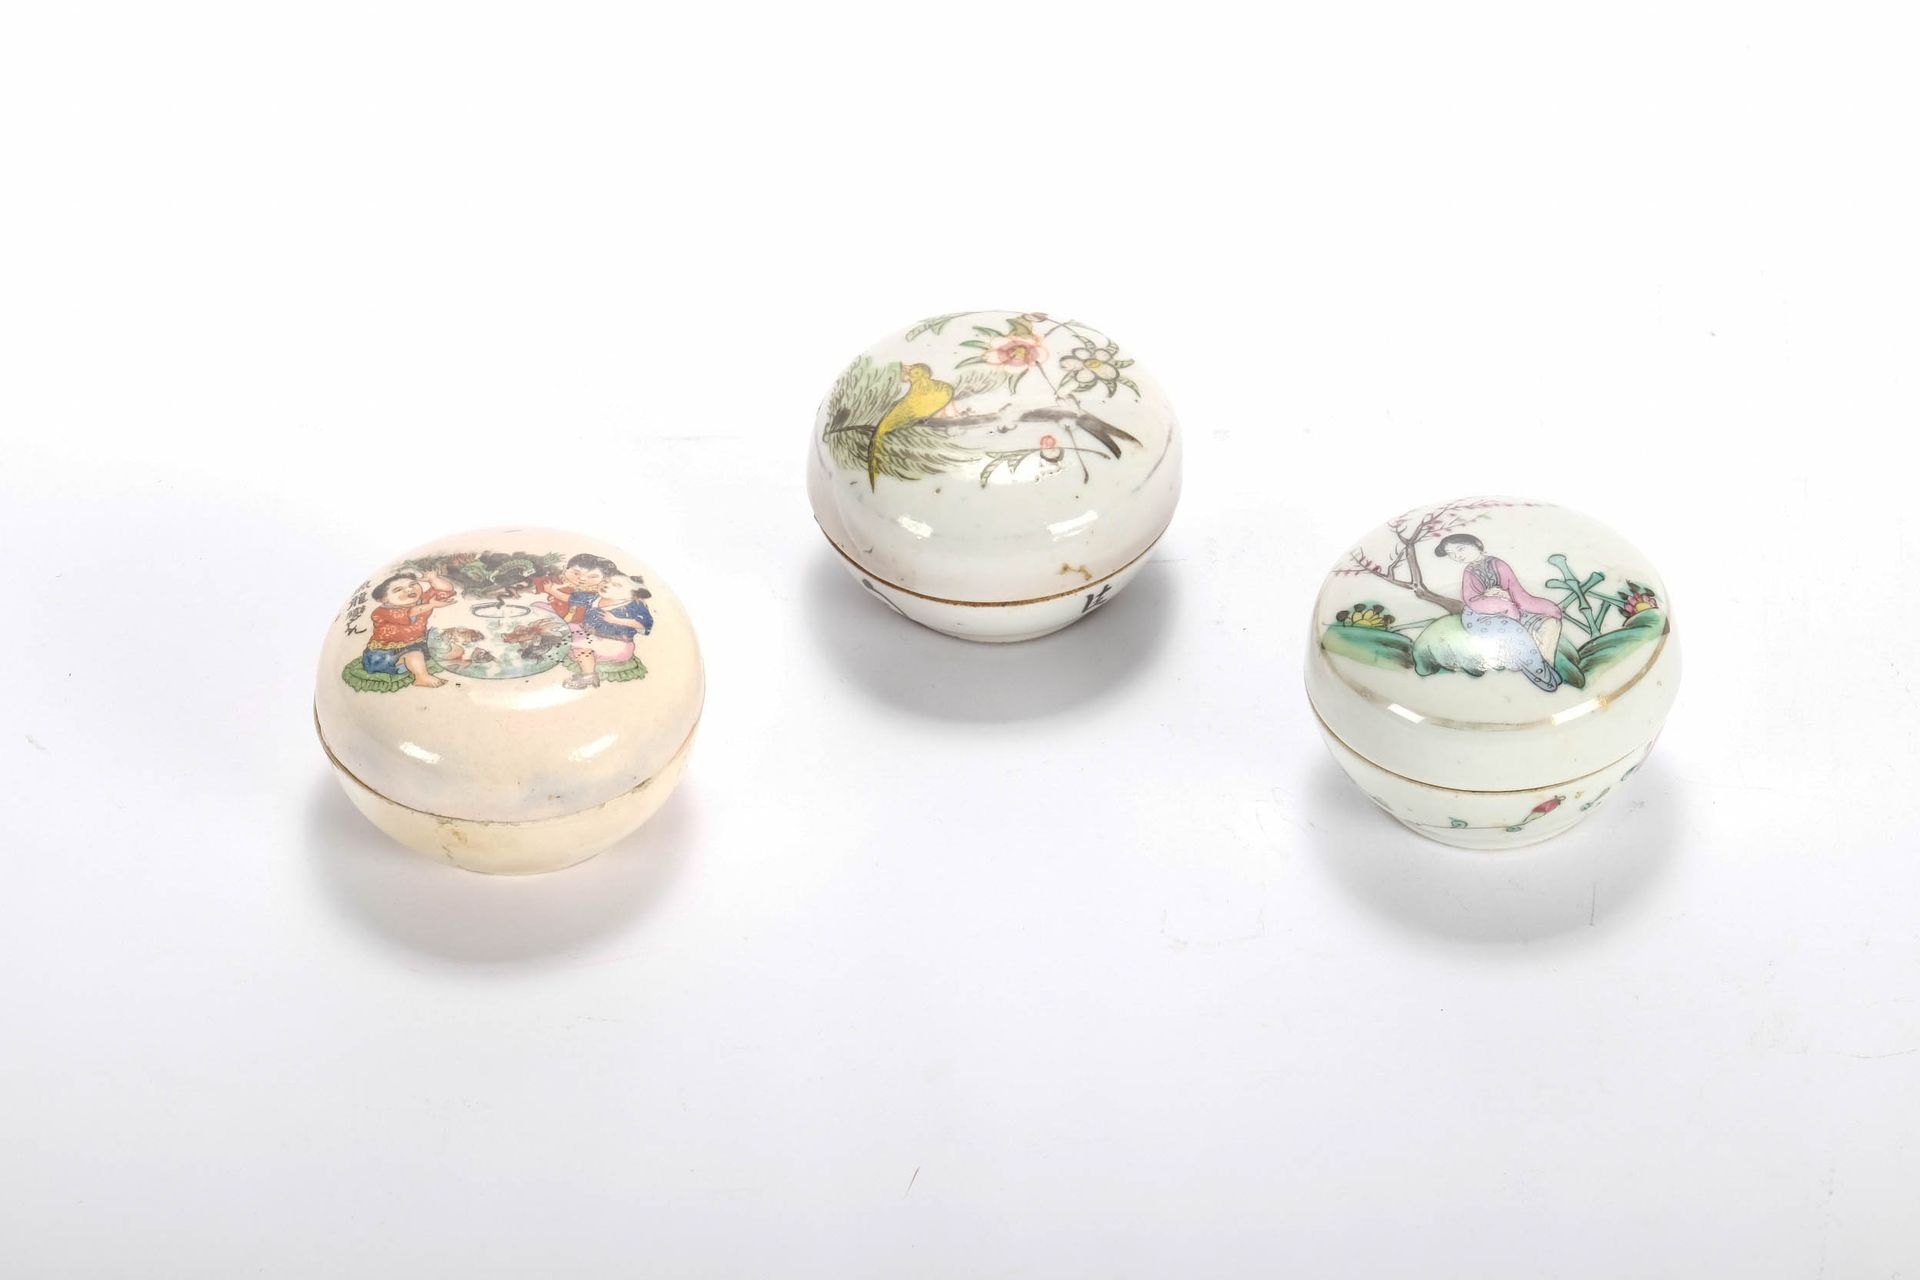 CHINE (CHINA, 中国) 一套3个有盖小瓷盒，19世纪末，20世纪初。高5厘米，直径8厘米。